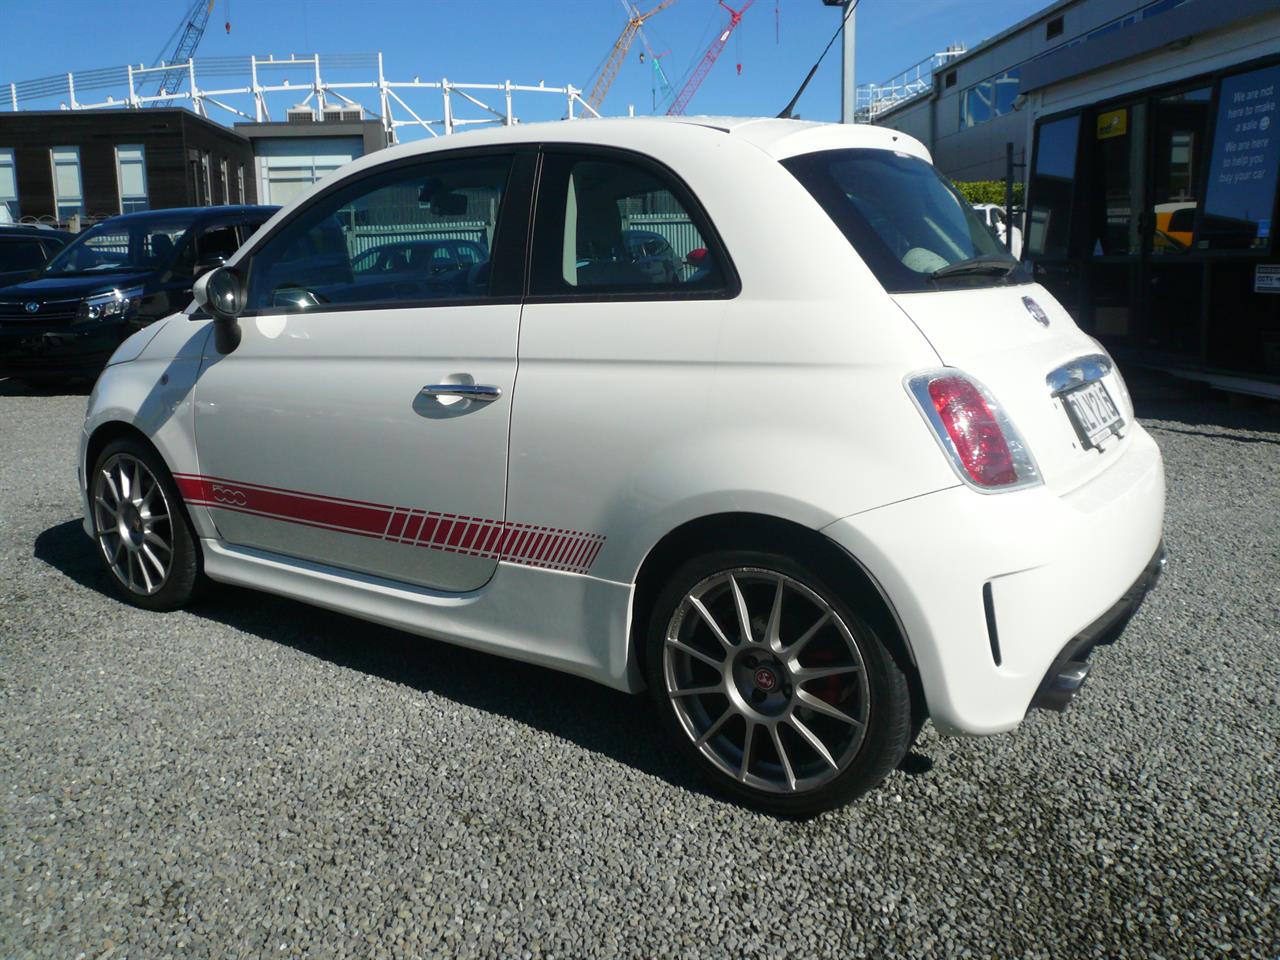 2010 Fiat 500 NZ new sport